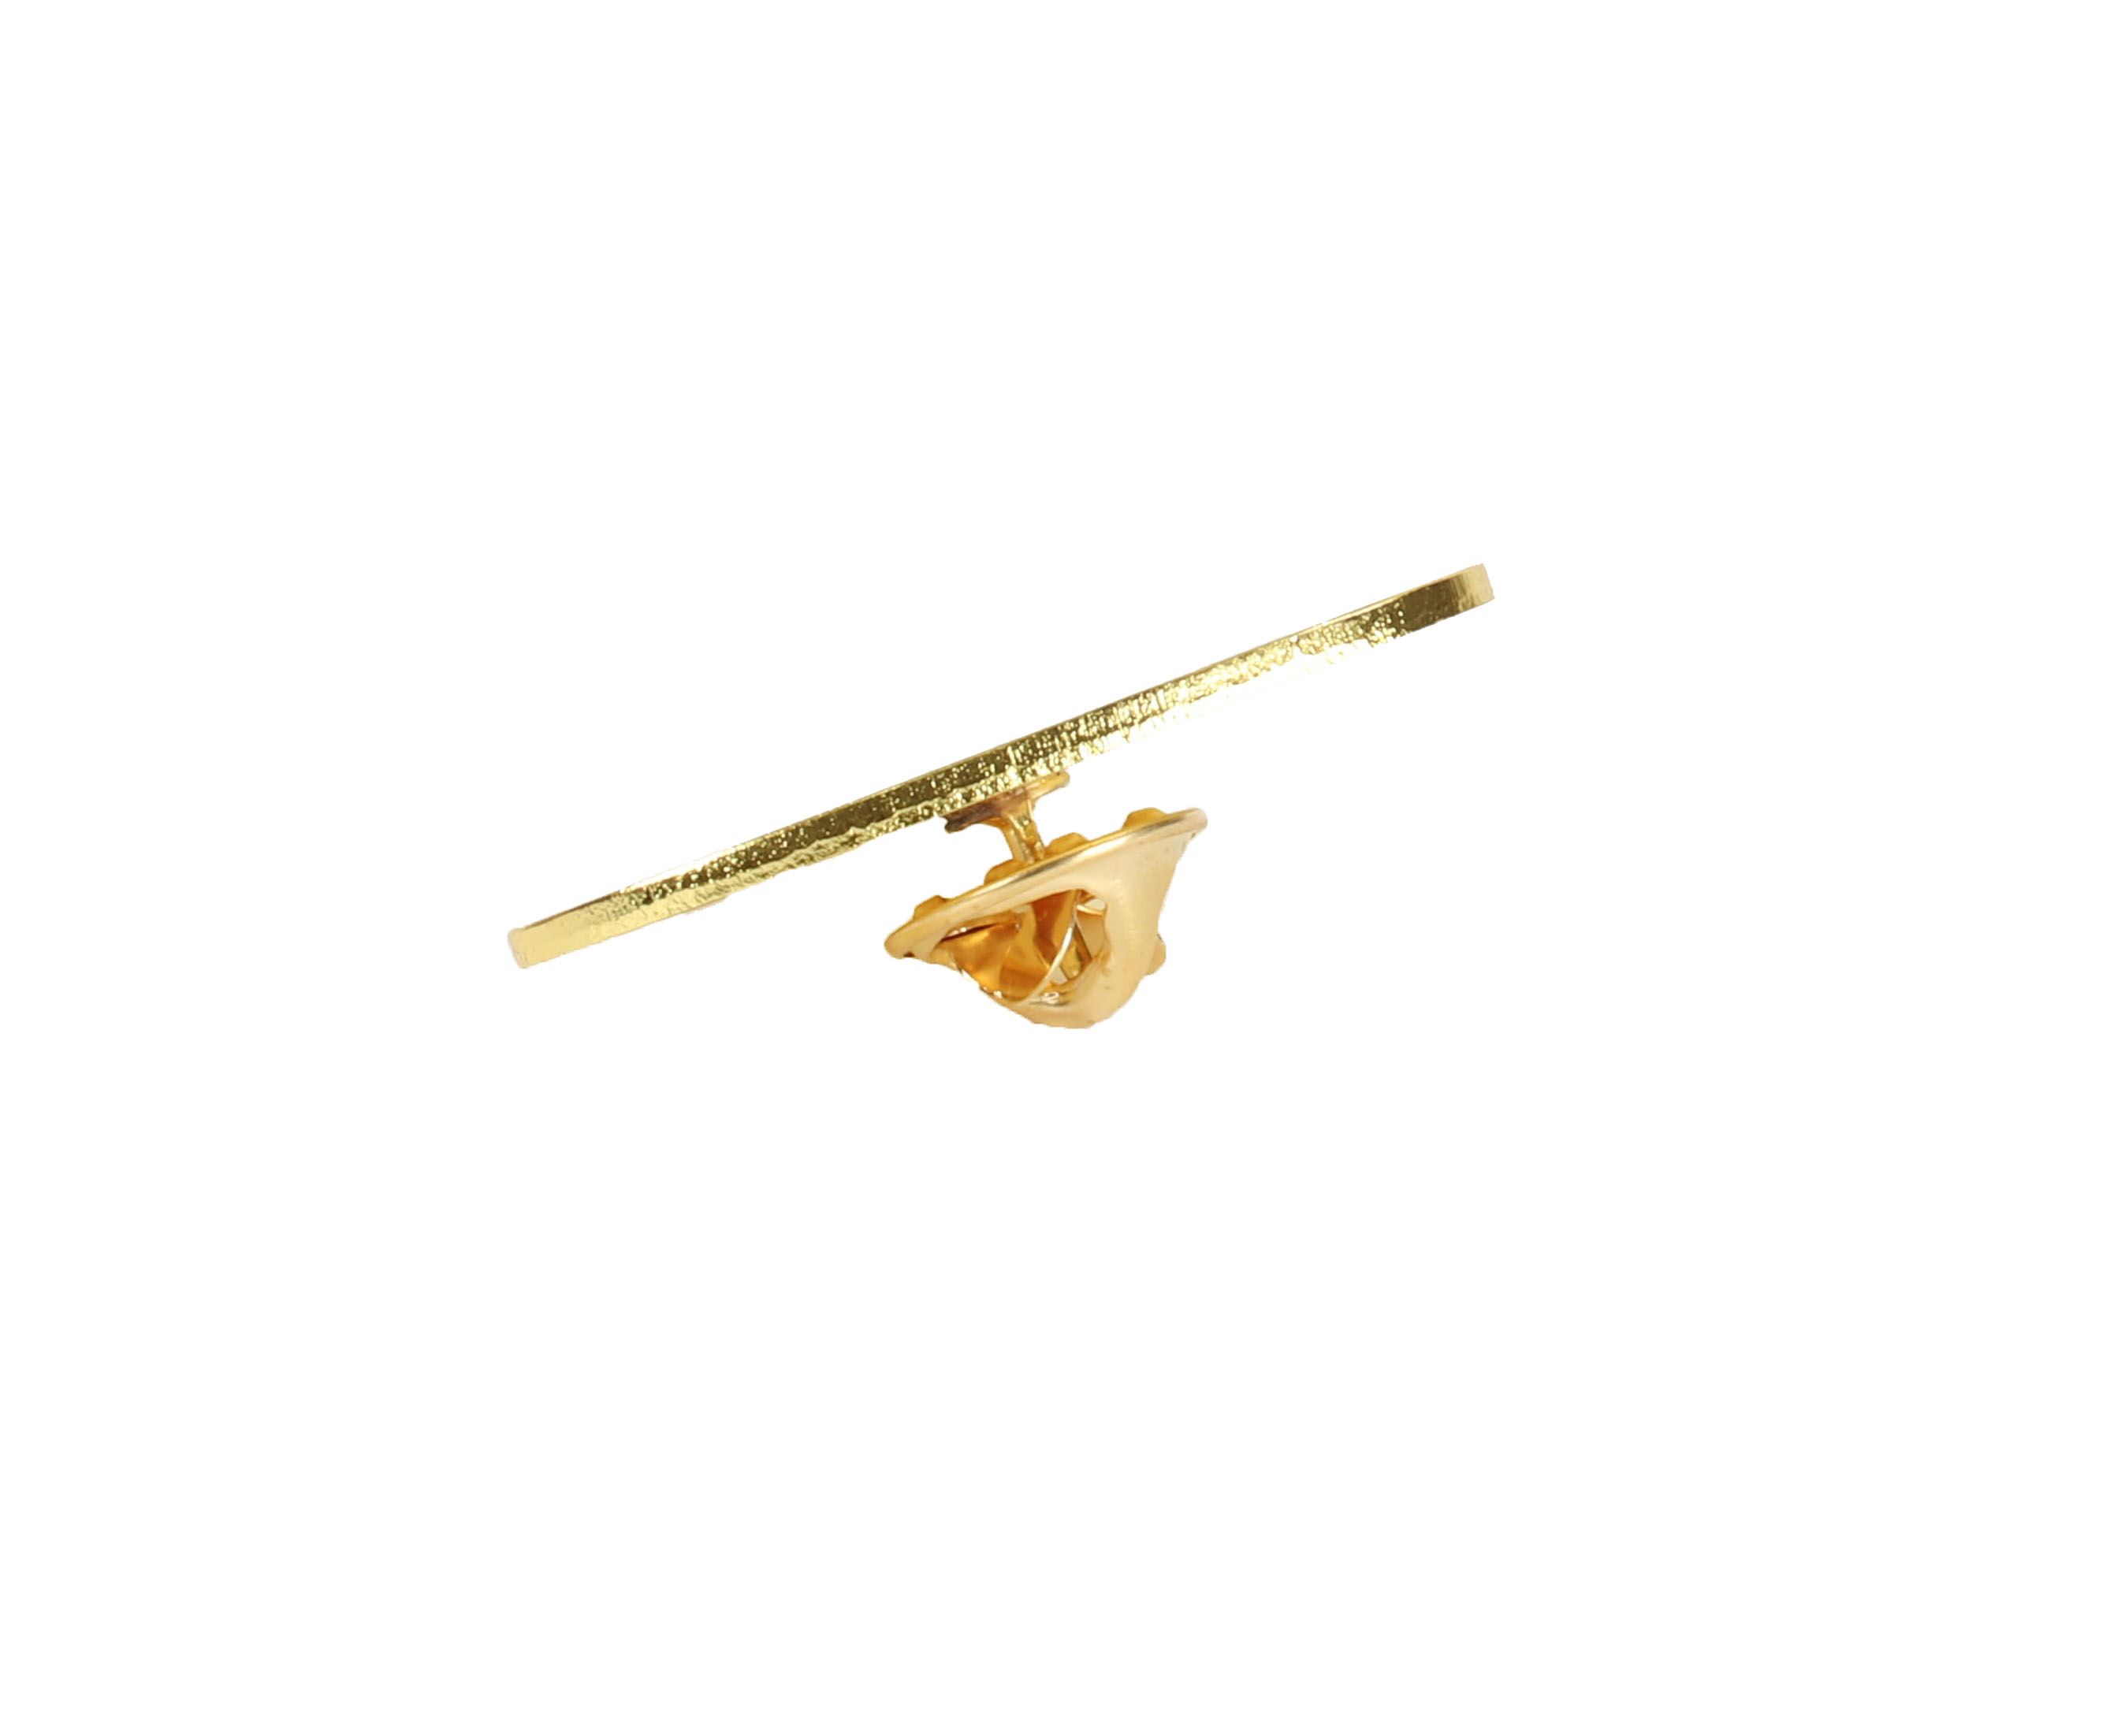 CapSpin Pin Tornado Gold Anstecker CapSpin